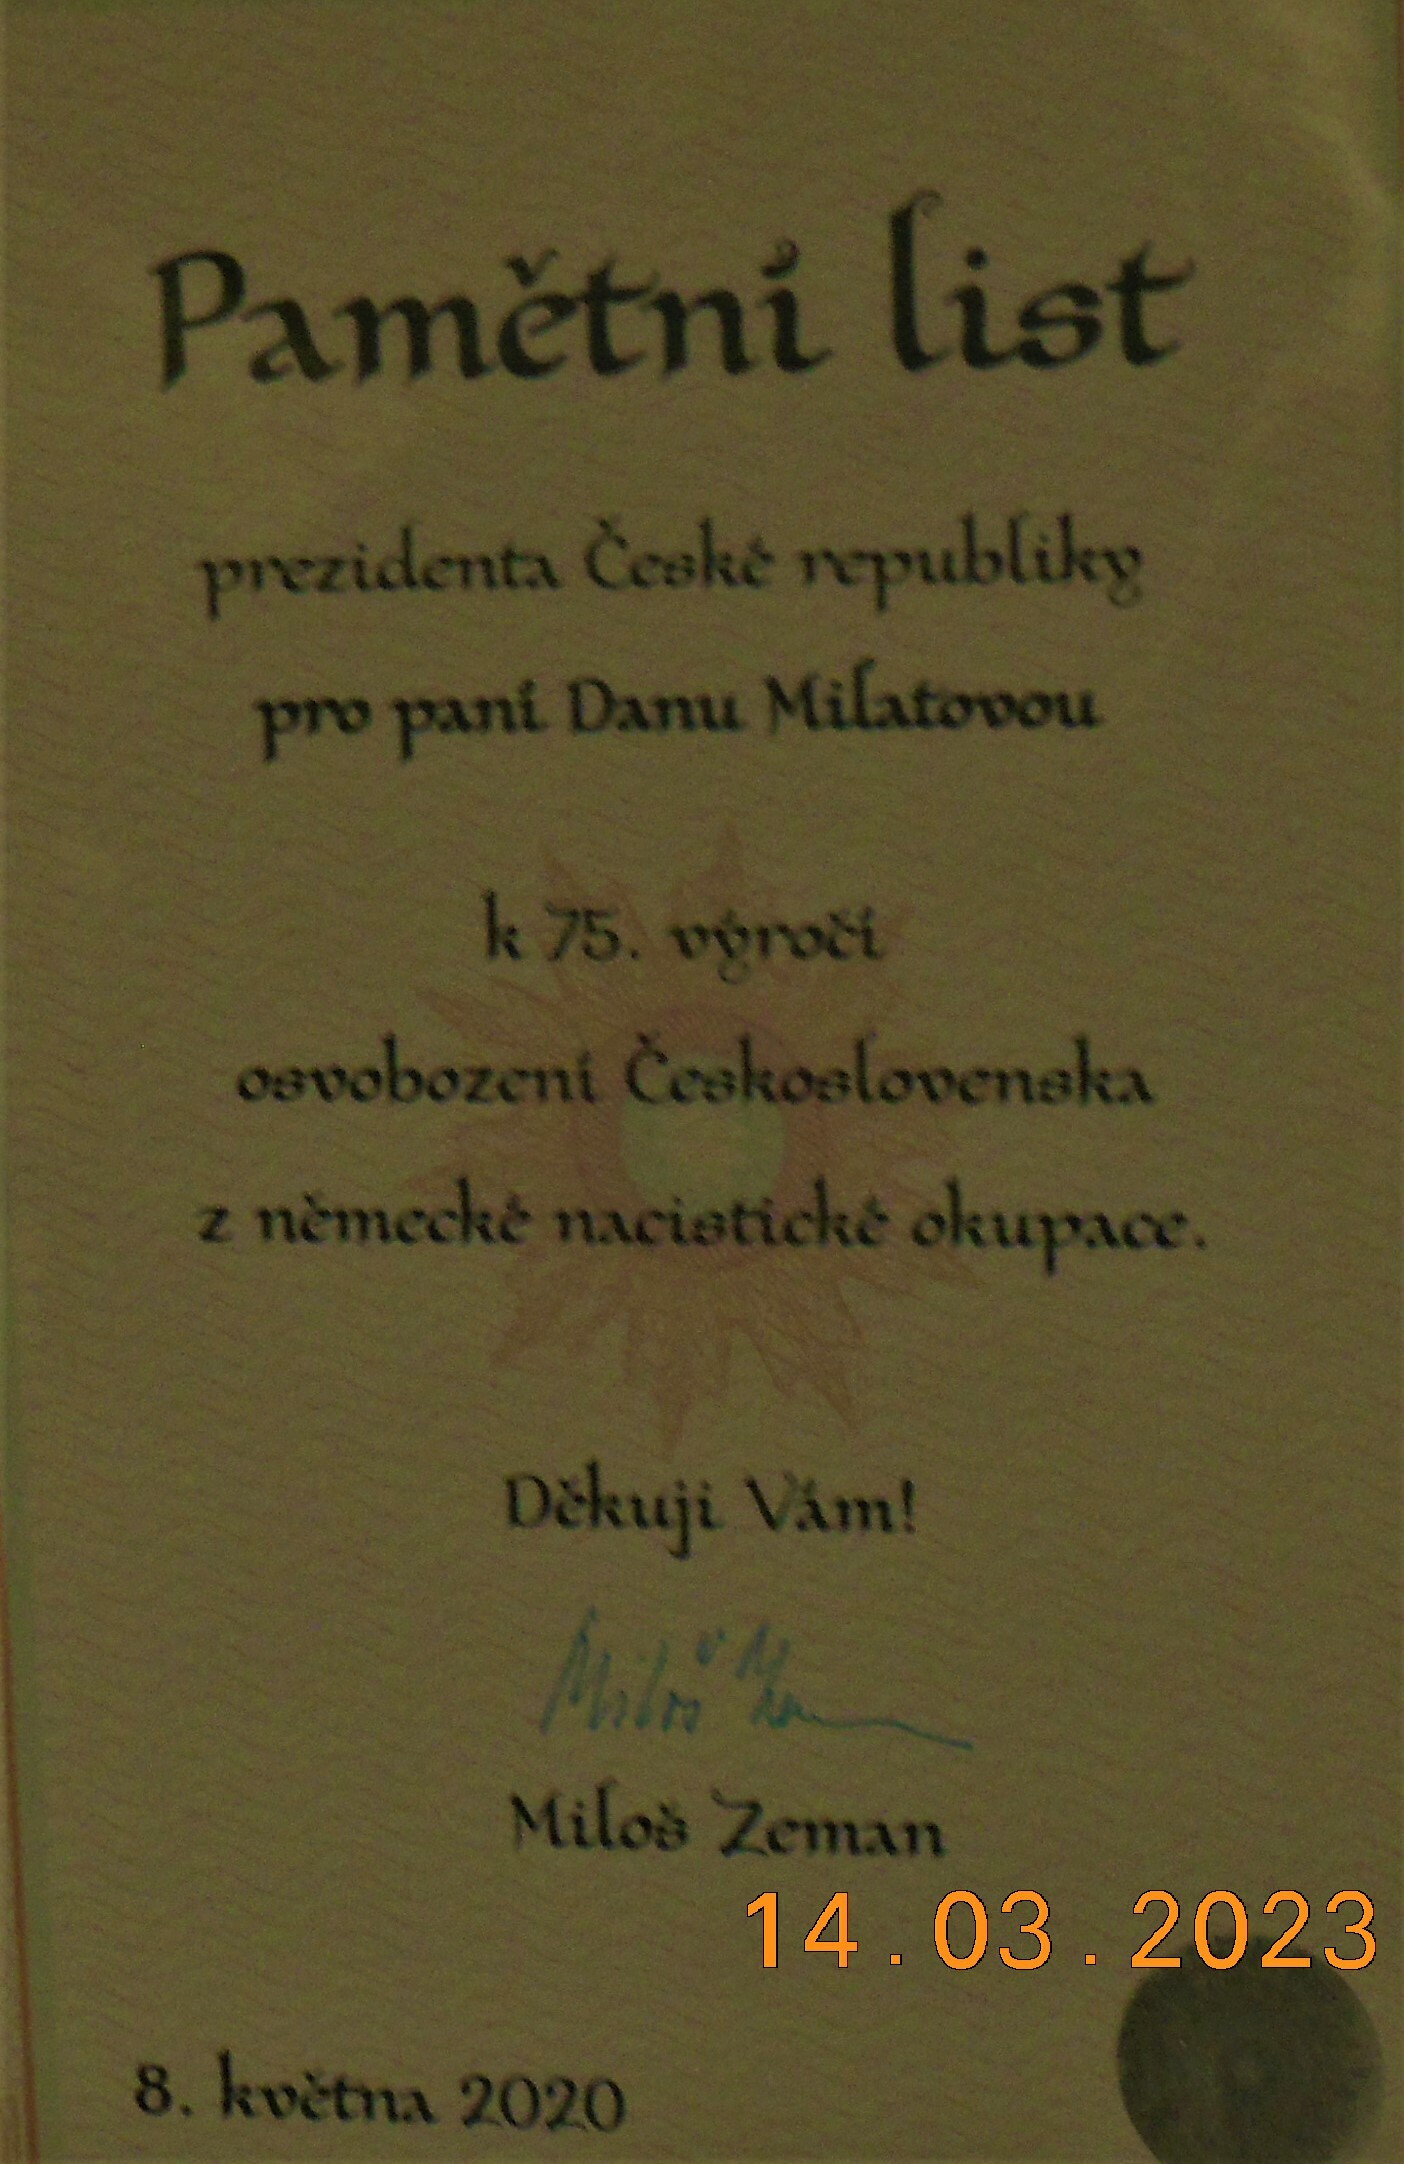 Поздравление от президента Милоша Земана в честь 75-ой годовщины Победы.